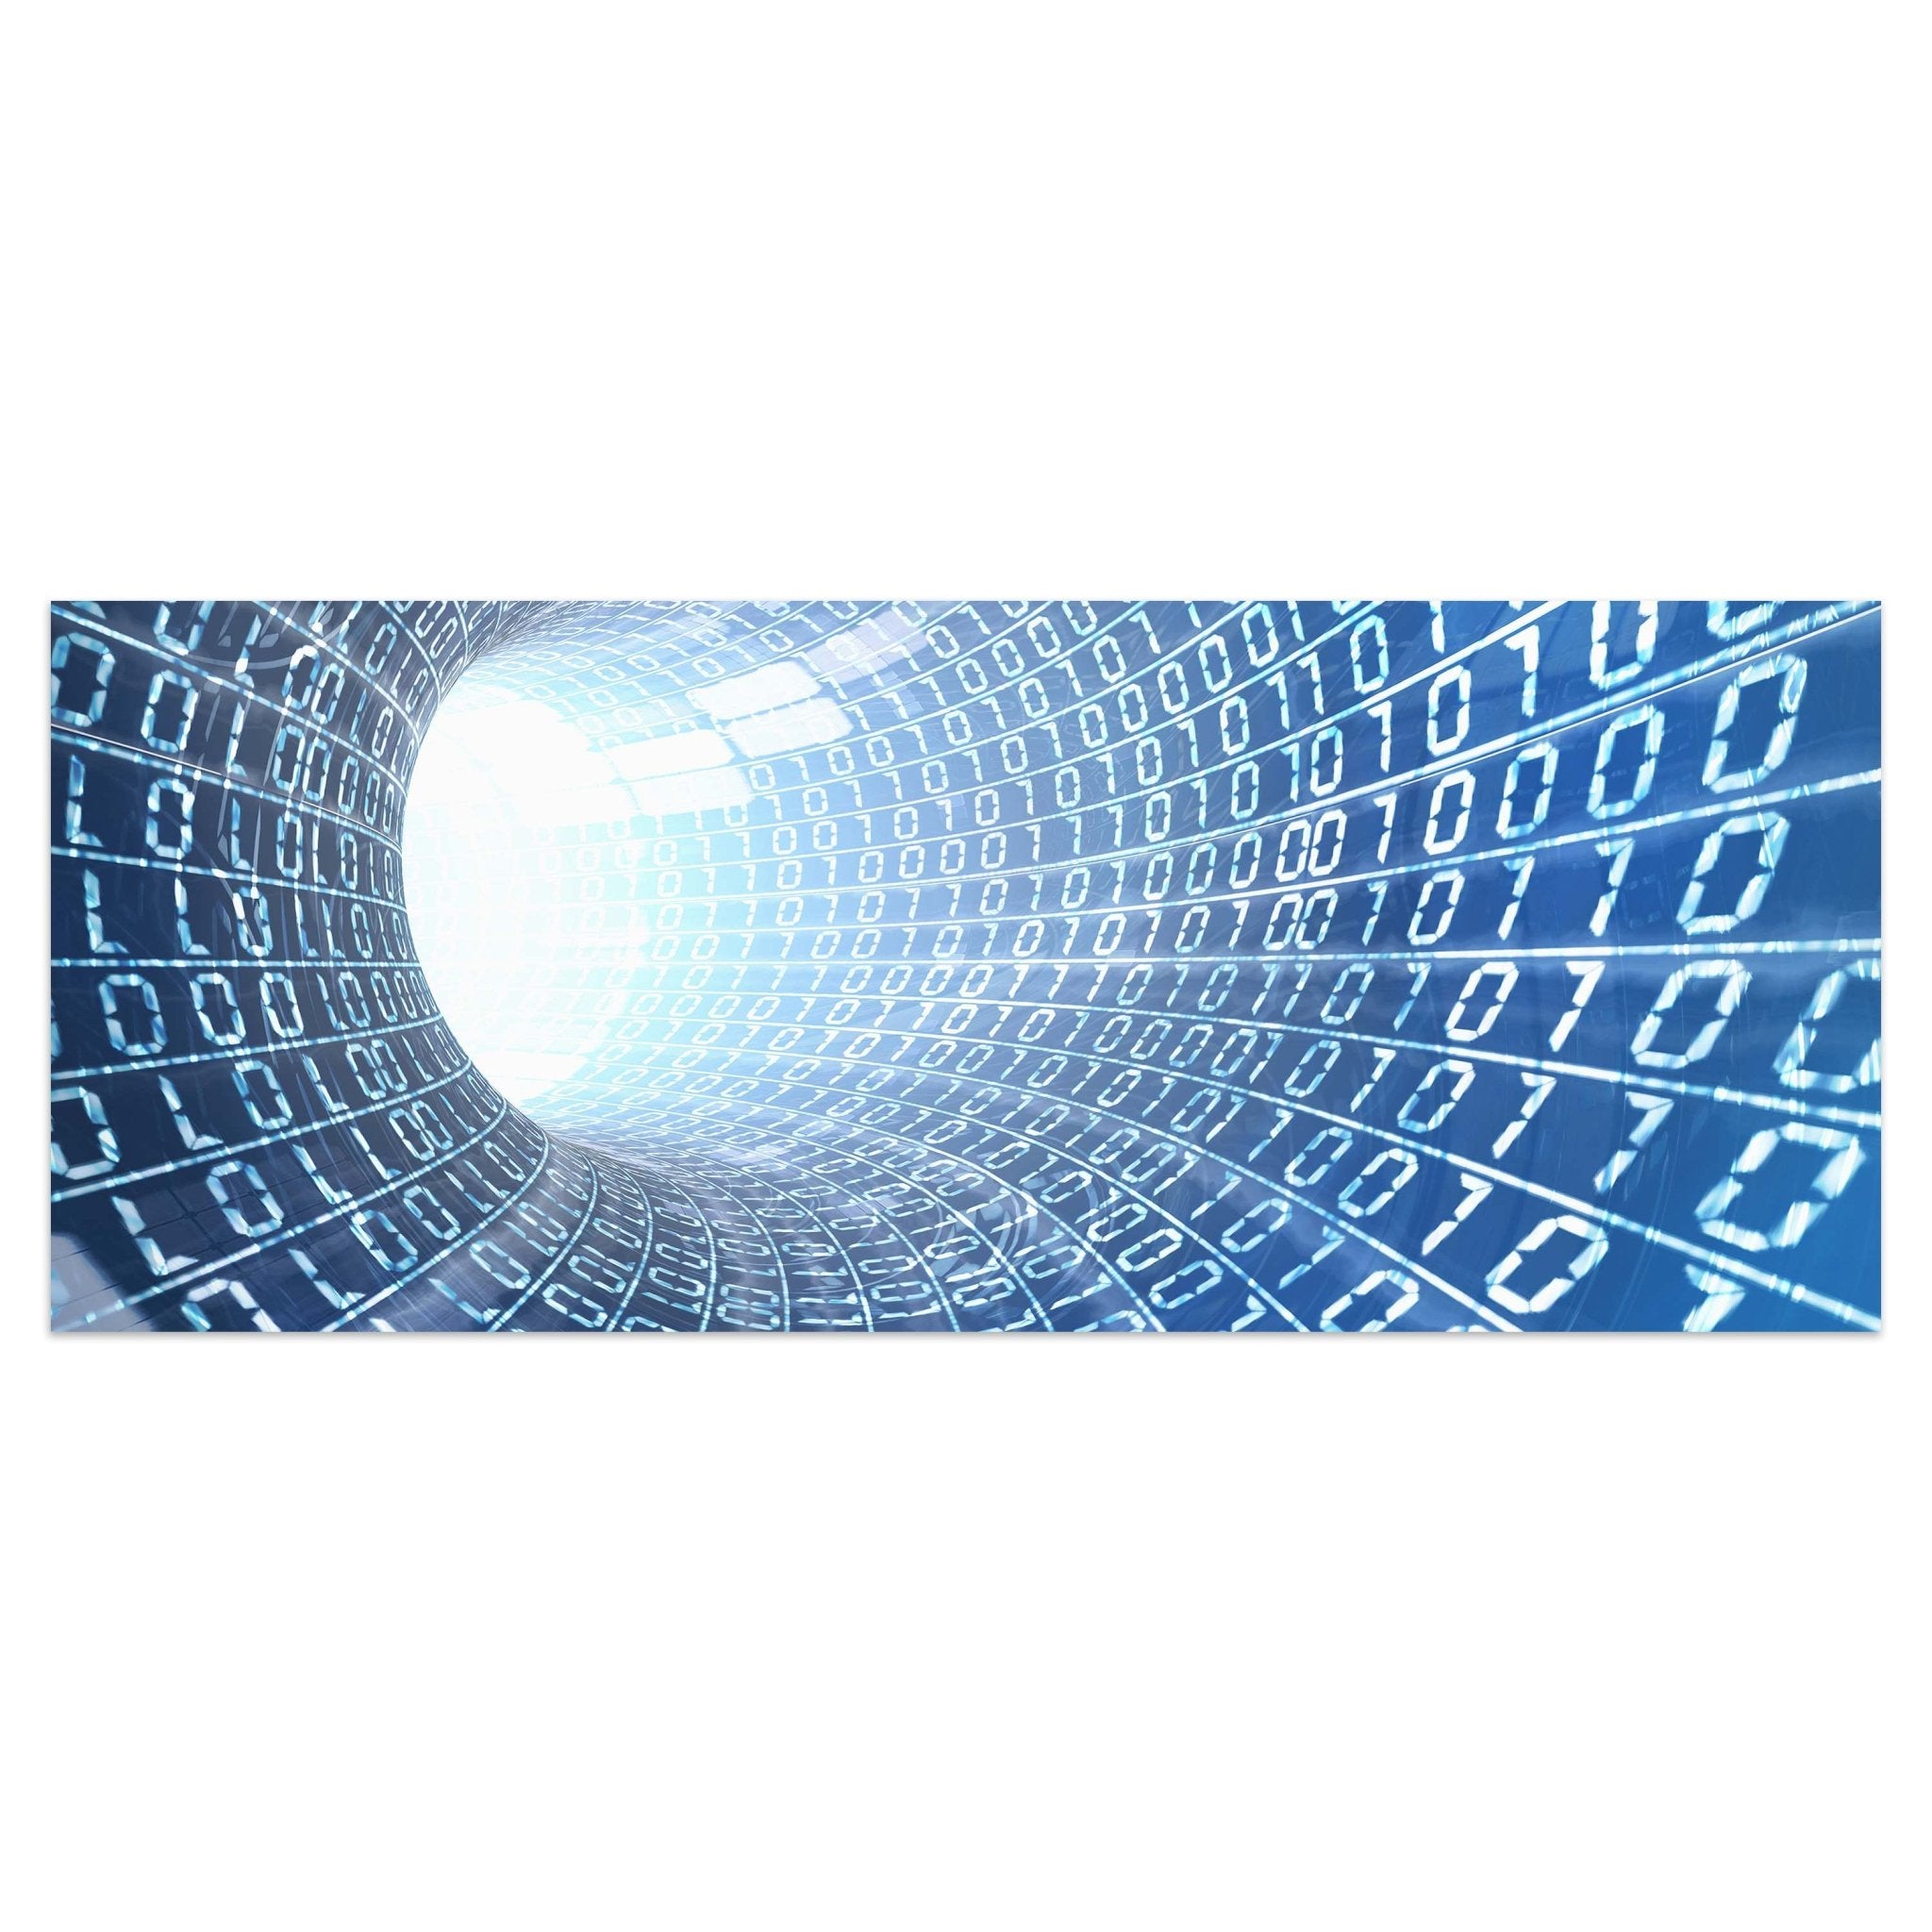 Leinwandbild Datentunnel Internet M0243 kaufen - Bild 1